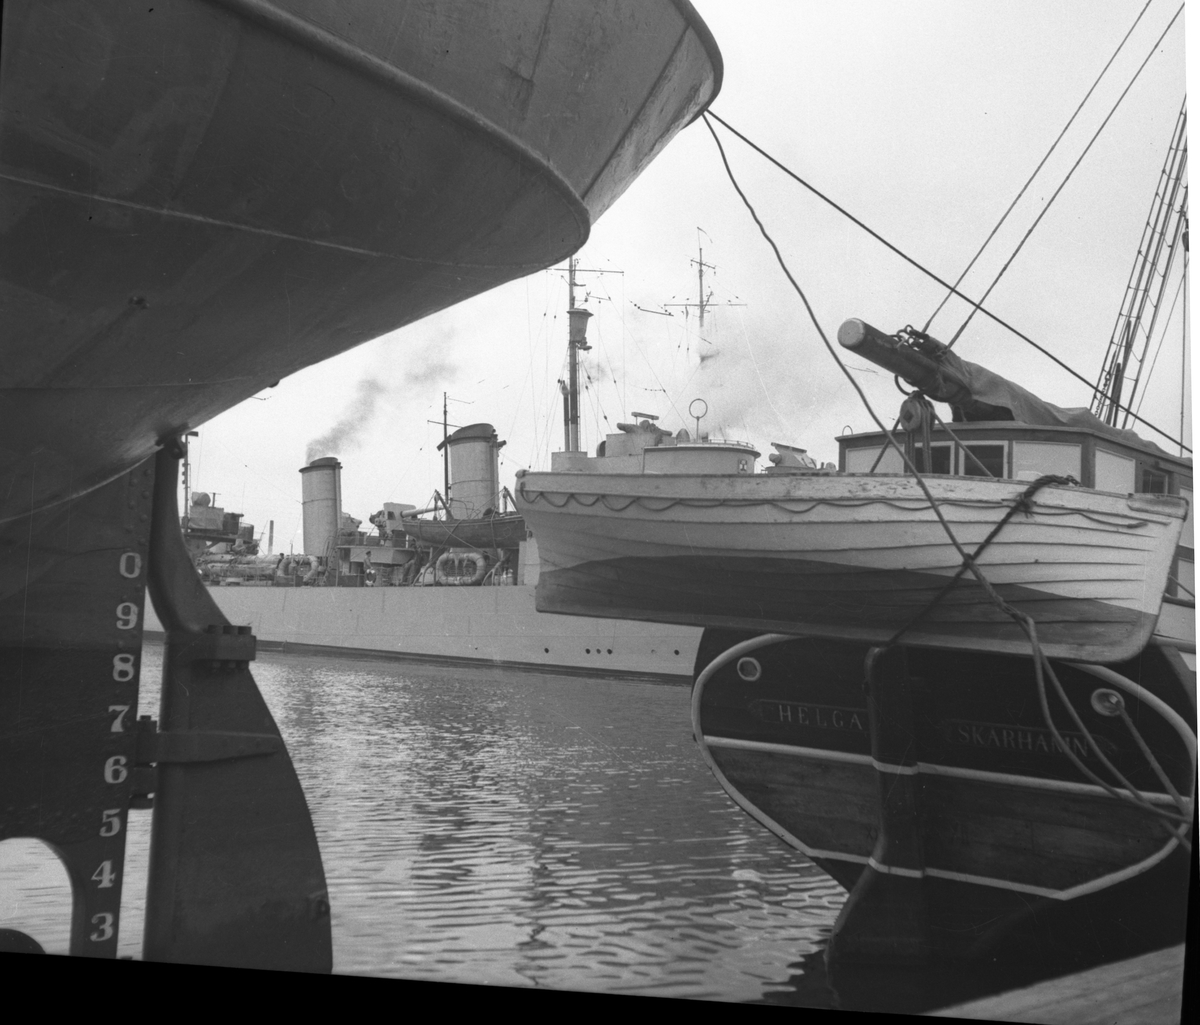 Flottbesök, 1937. I bakgrunden syns två svensk jagare med HMS Nordenskjöld (b. 1927) närmast.